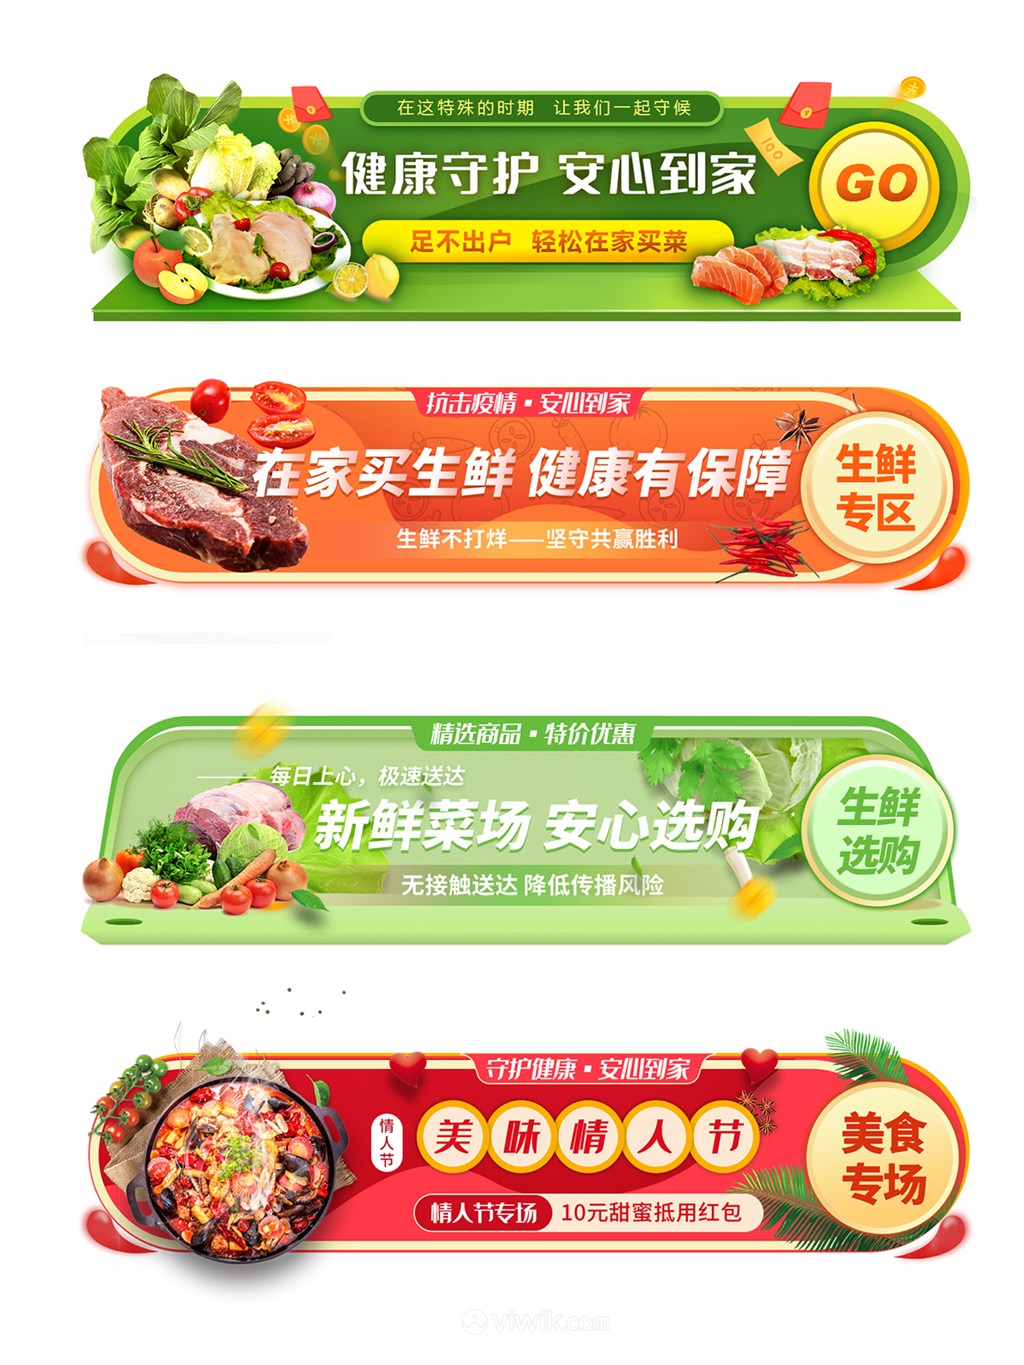 蔬果生鲜美食专场促销活动外卖电商胶囊banner设计